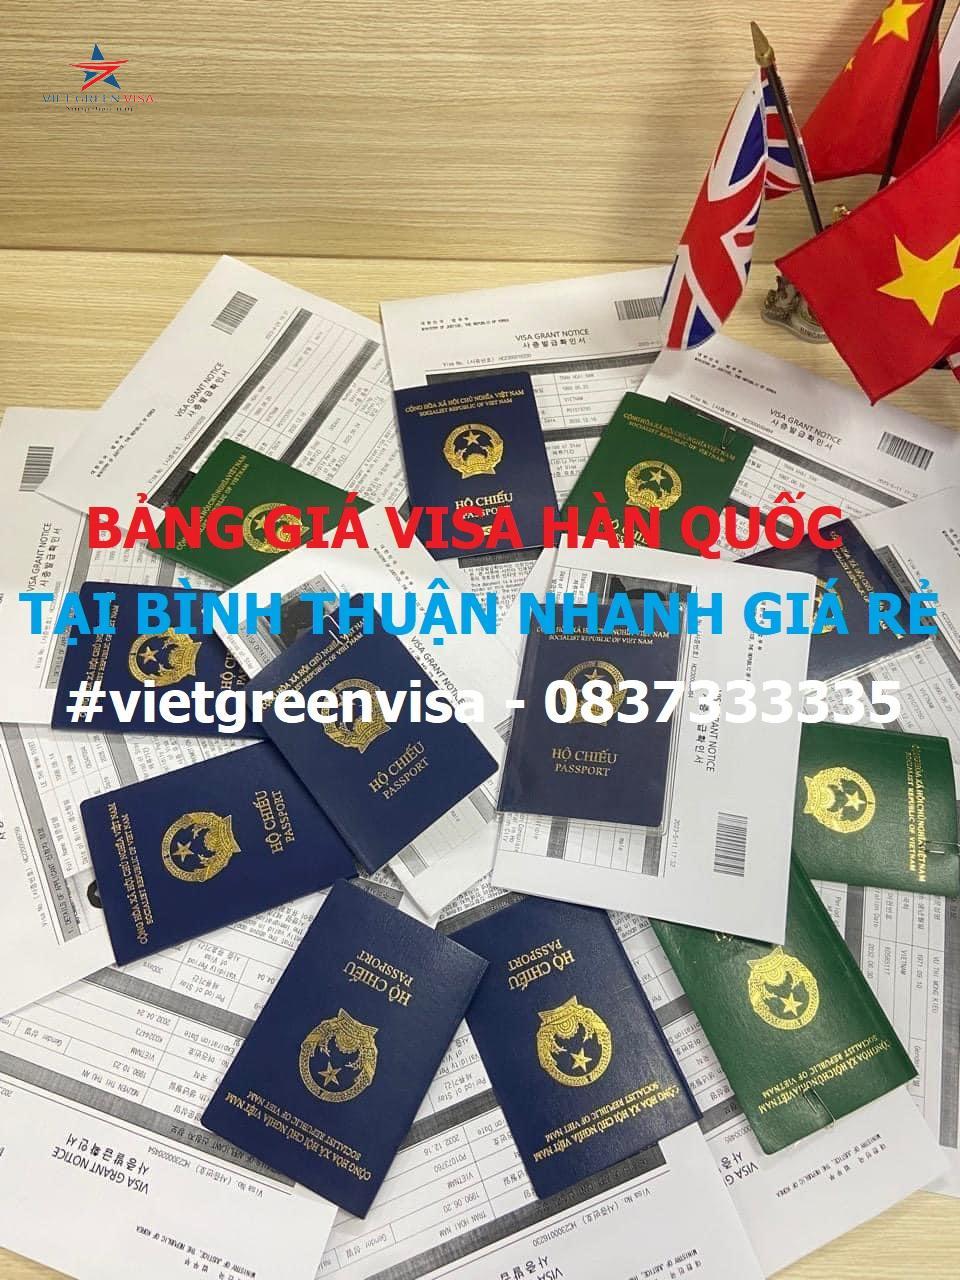 Dịch vụ xin visa Hàn Quốc tại Bình Thuận nhanh giá rẻ